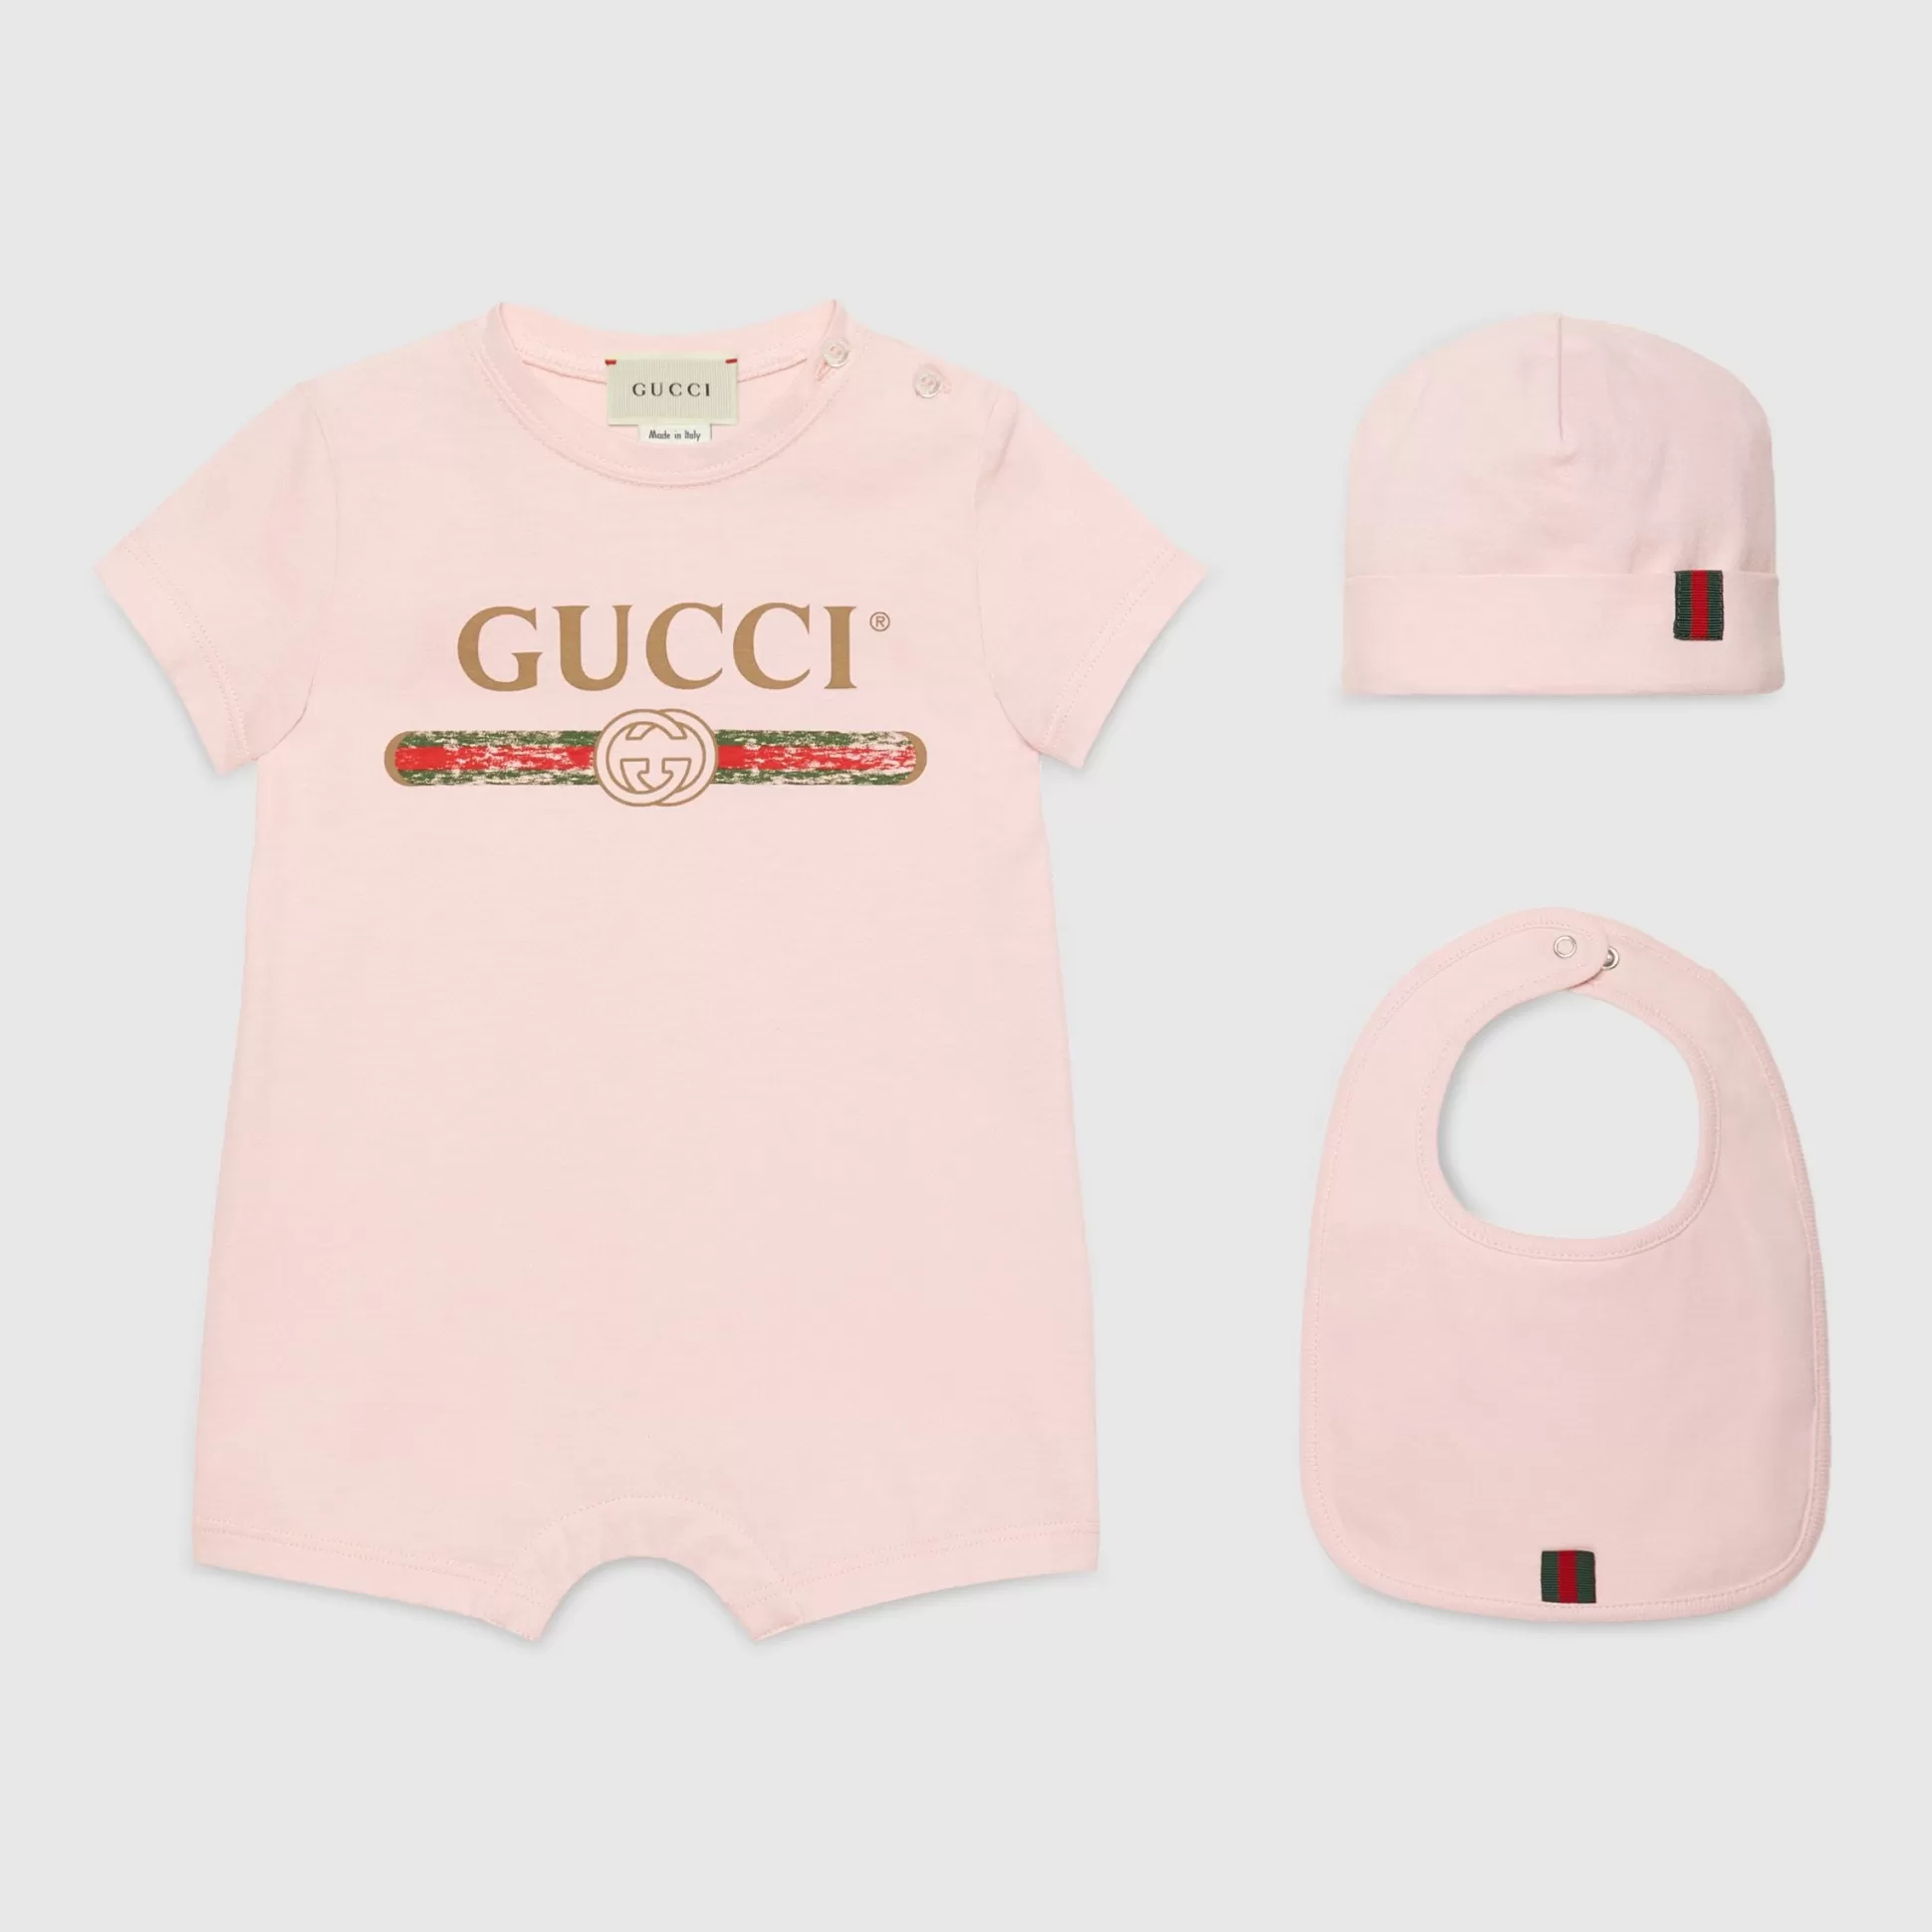 GUCCI Baby Cotton Gift Set With Logo-Children Newborn (0-12 Months)